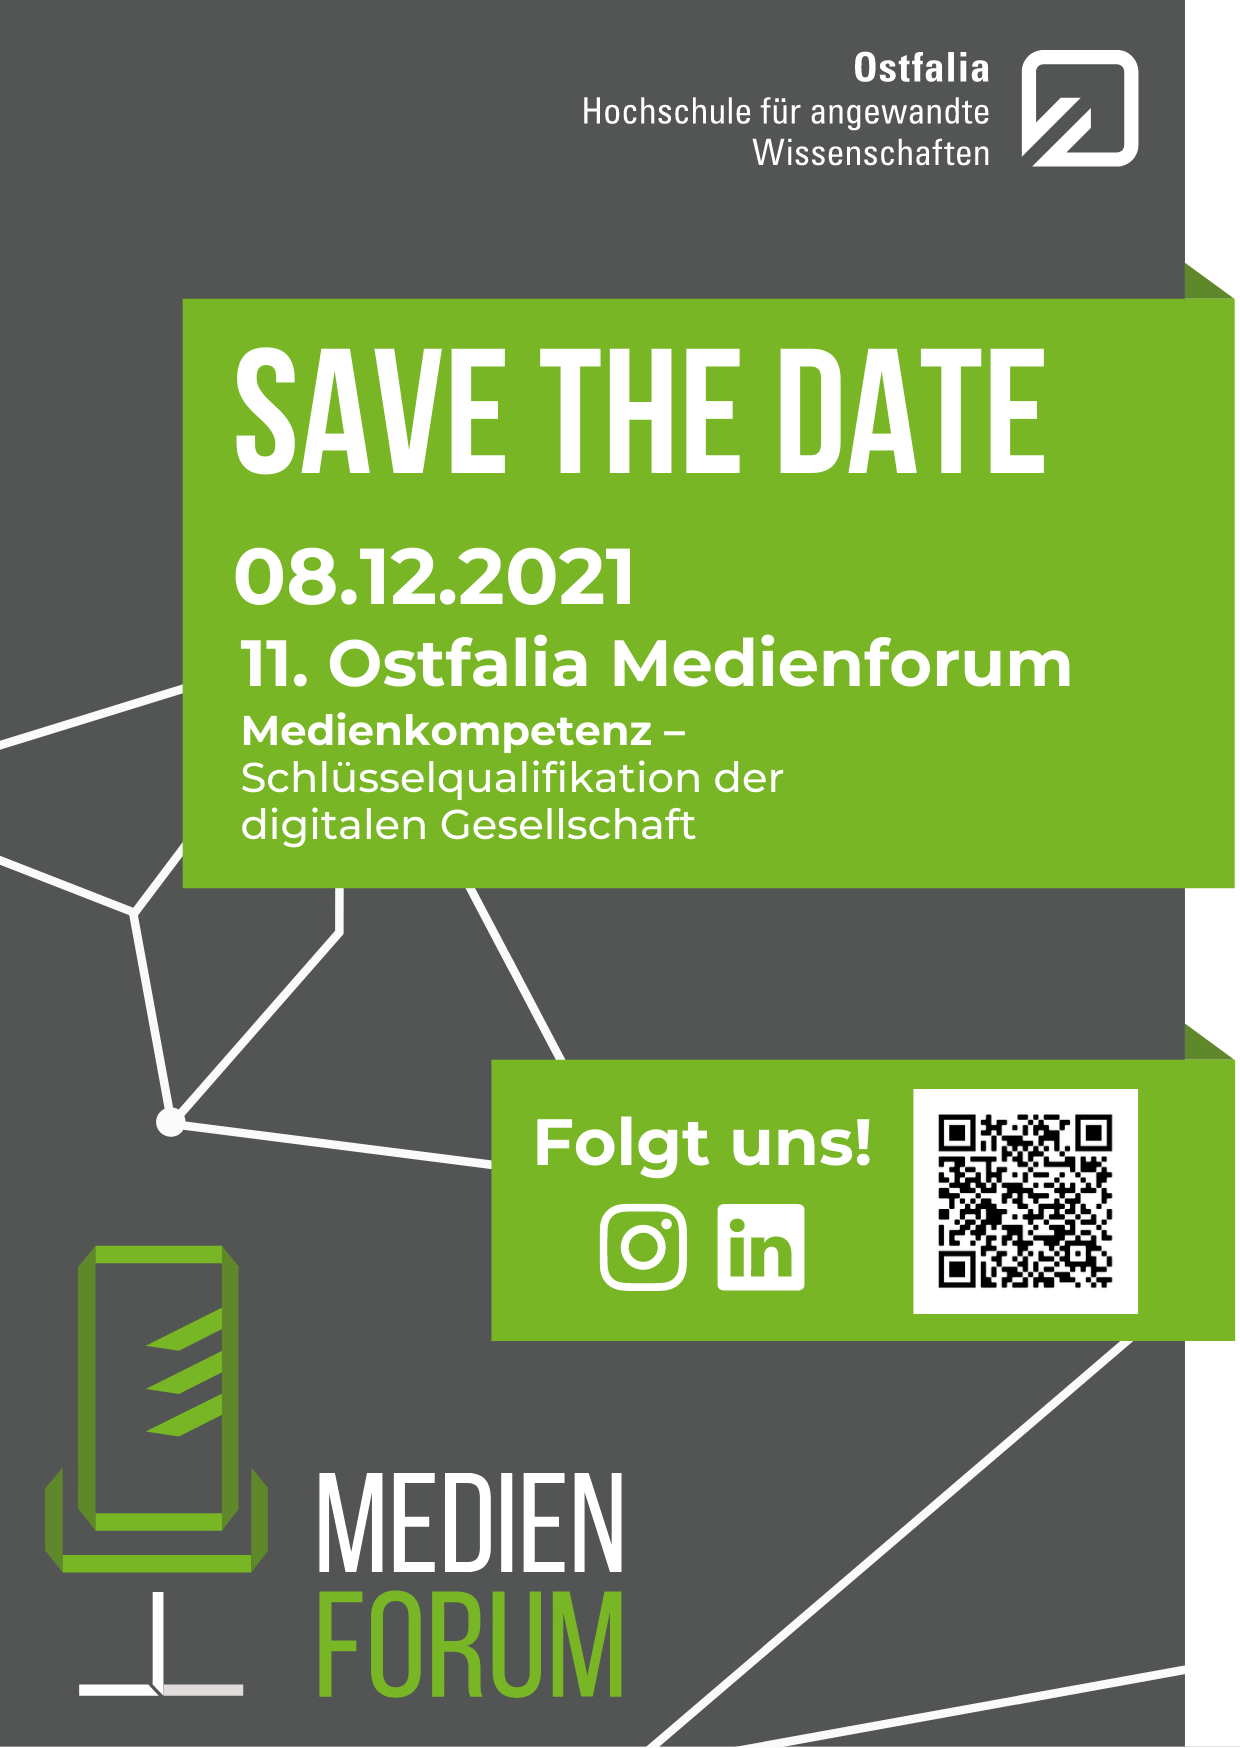 Das Ostfalia Medienforum am 8.12.2021. Grafik: Medienforum/Ostfalia Hochschule